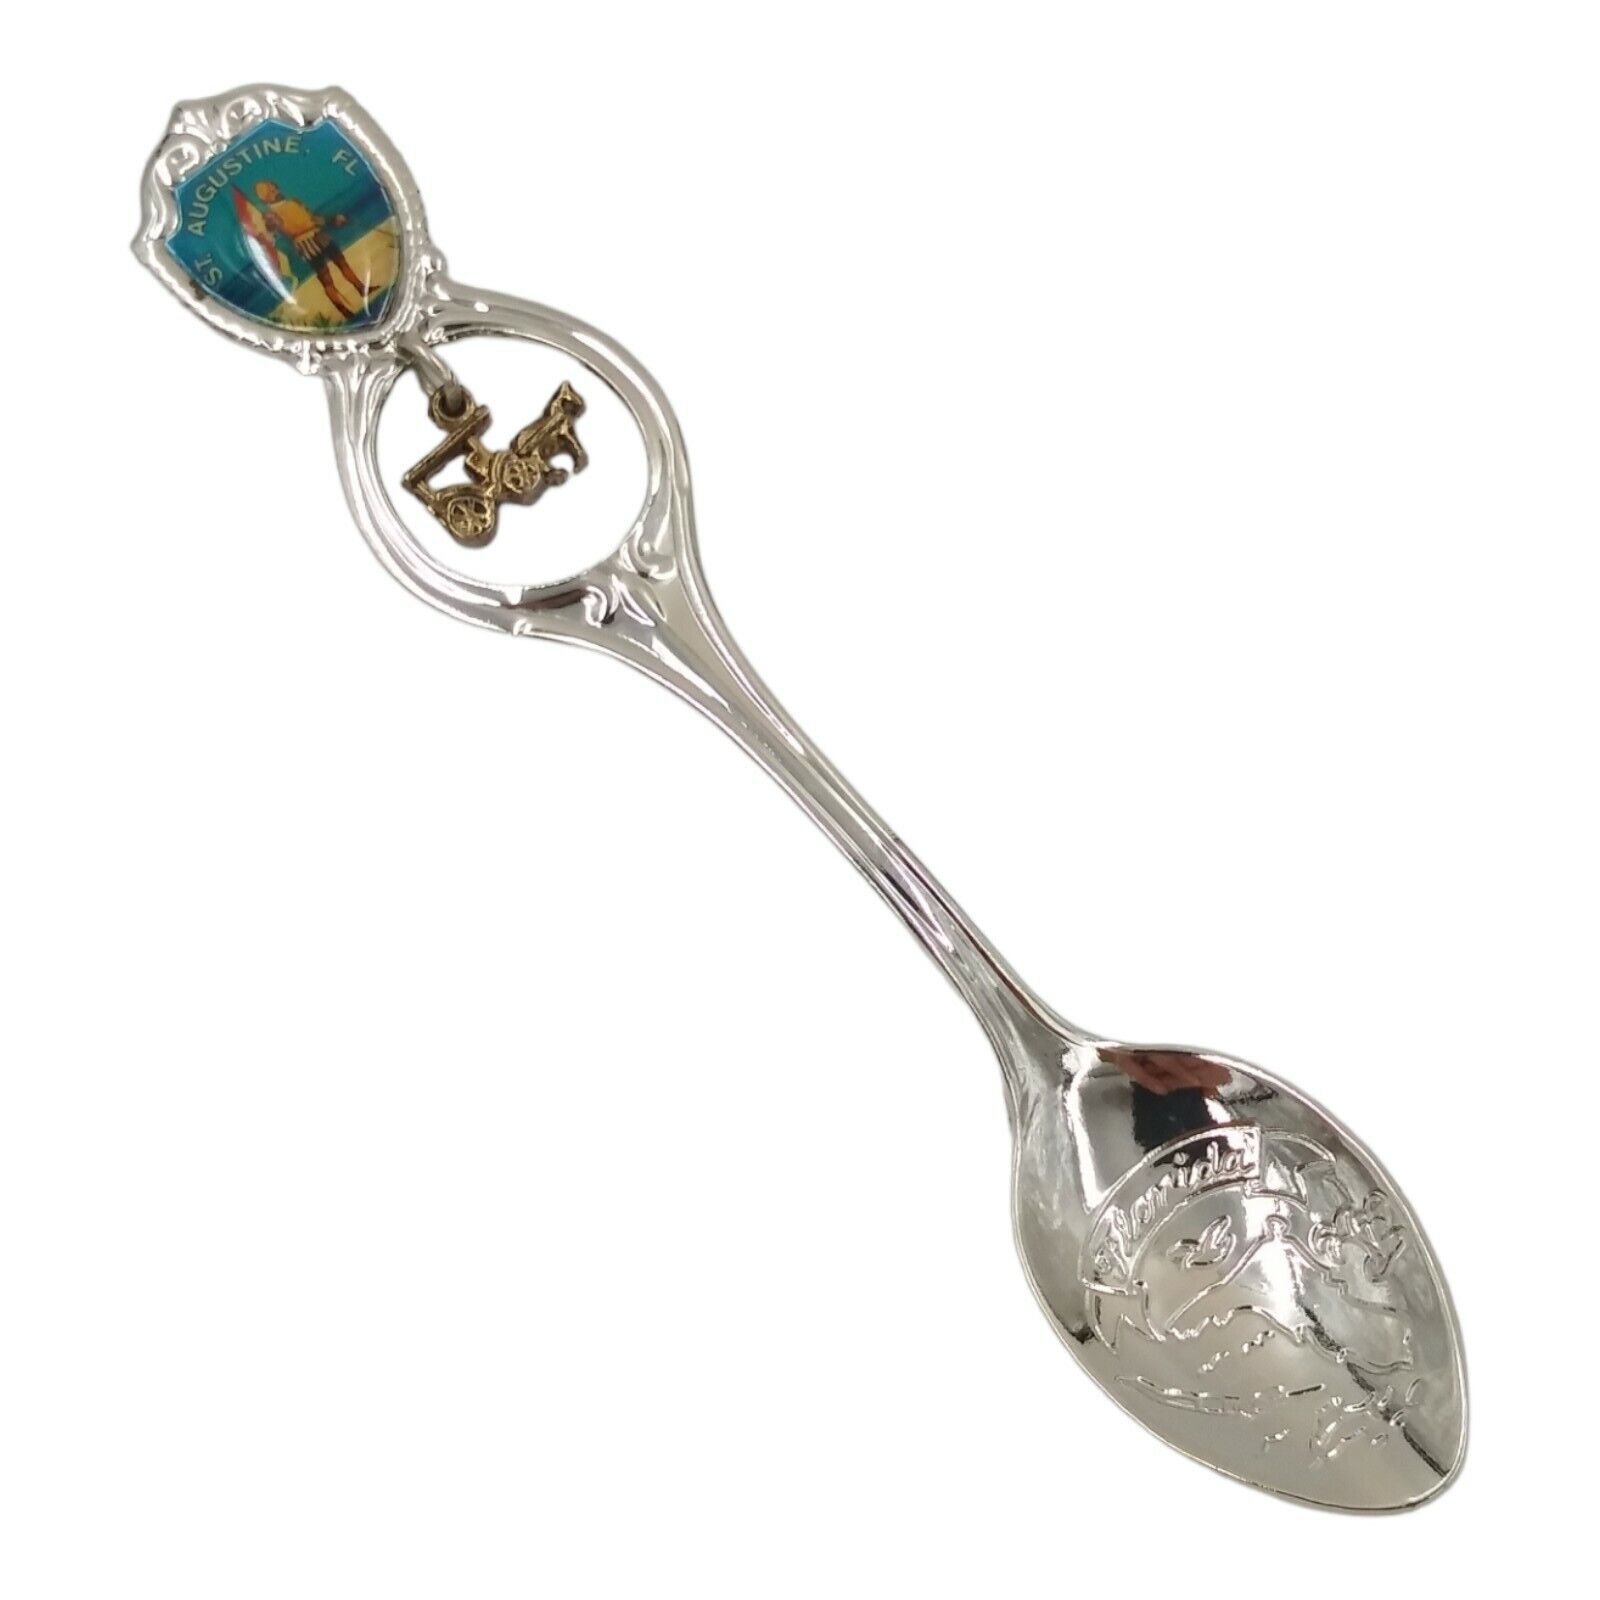 Vintage St Augustine Florida Souvenir Spoon US Collectible Ponce de Leon